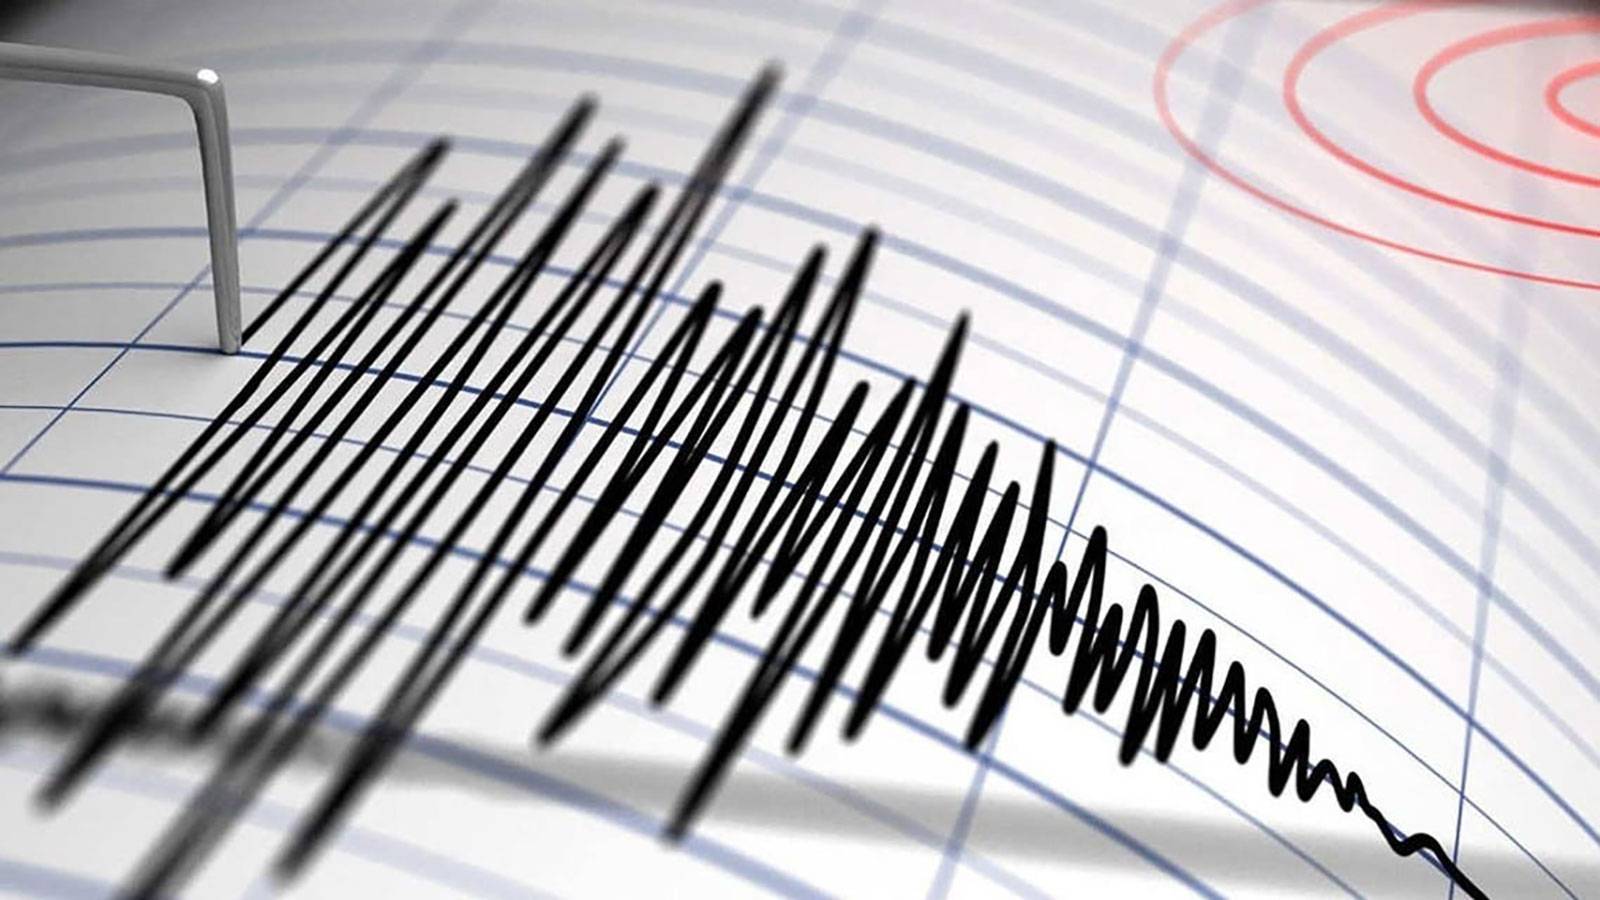 زلزال بقوة 5.3 درجة يضرب شرق تركيا